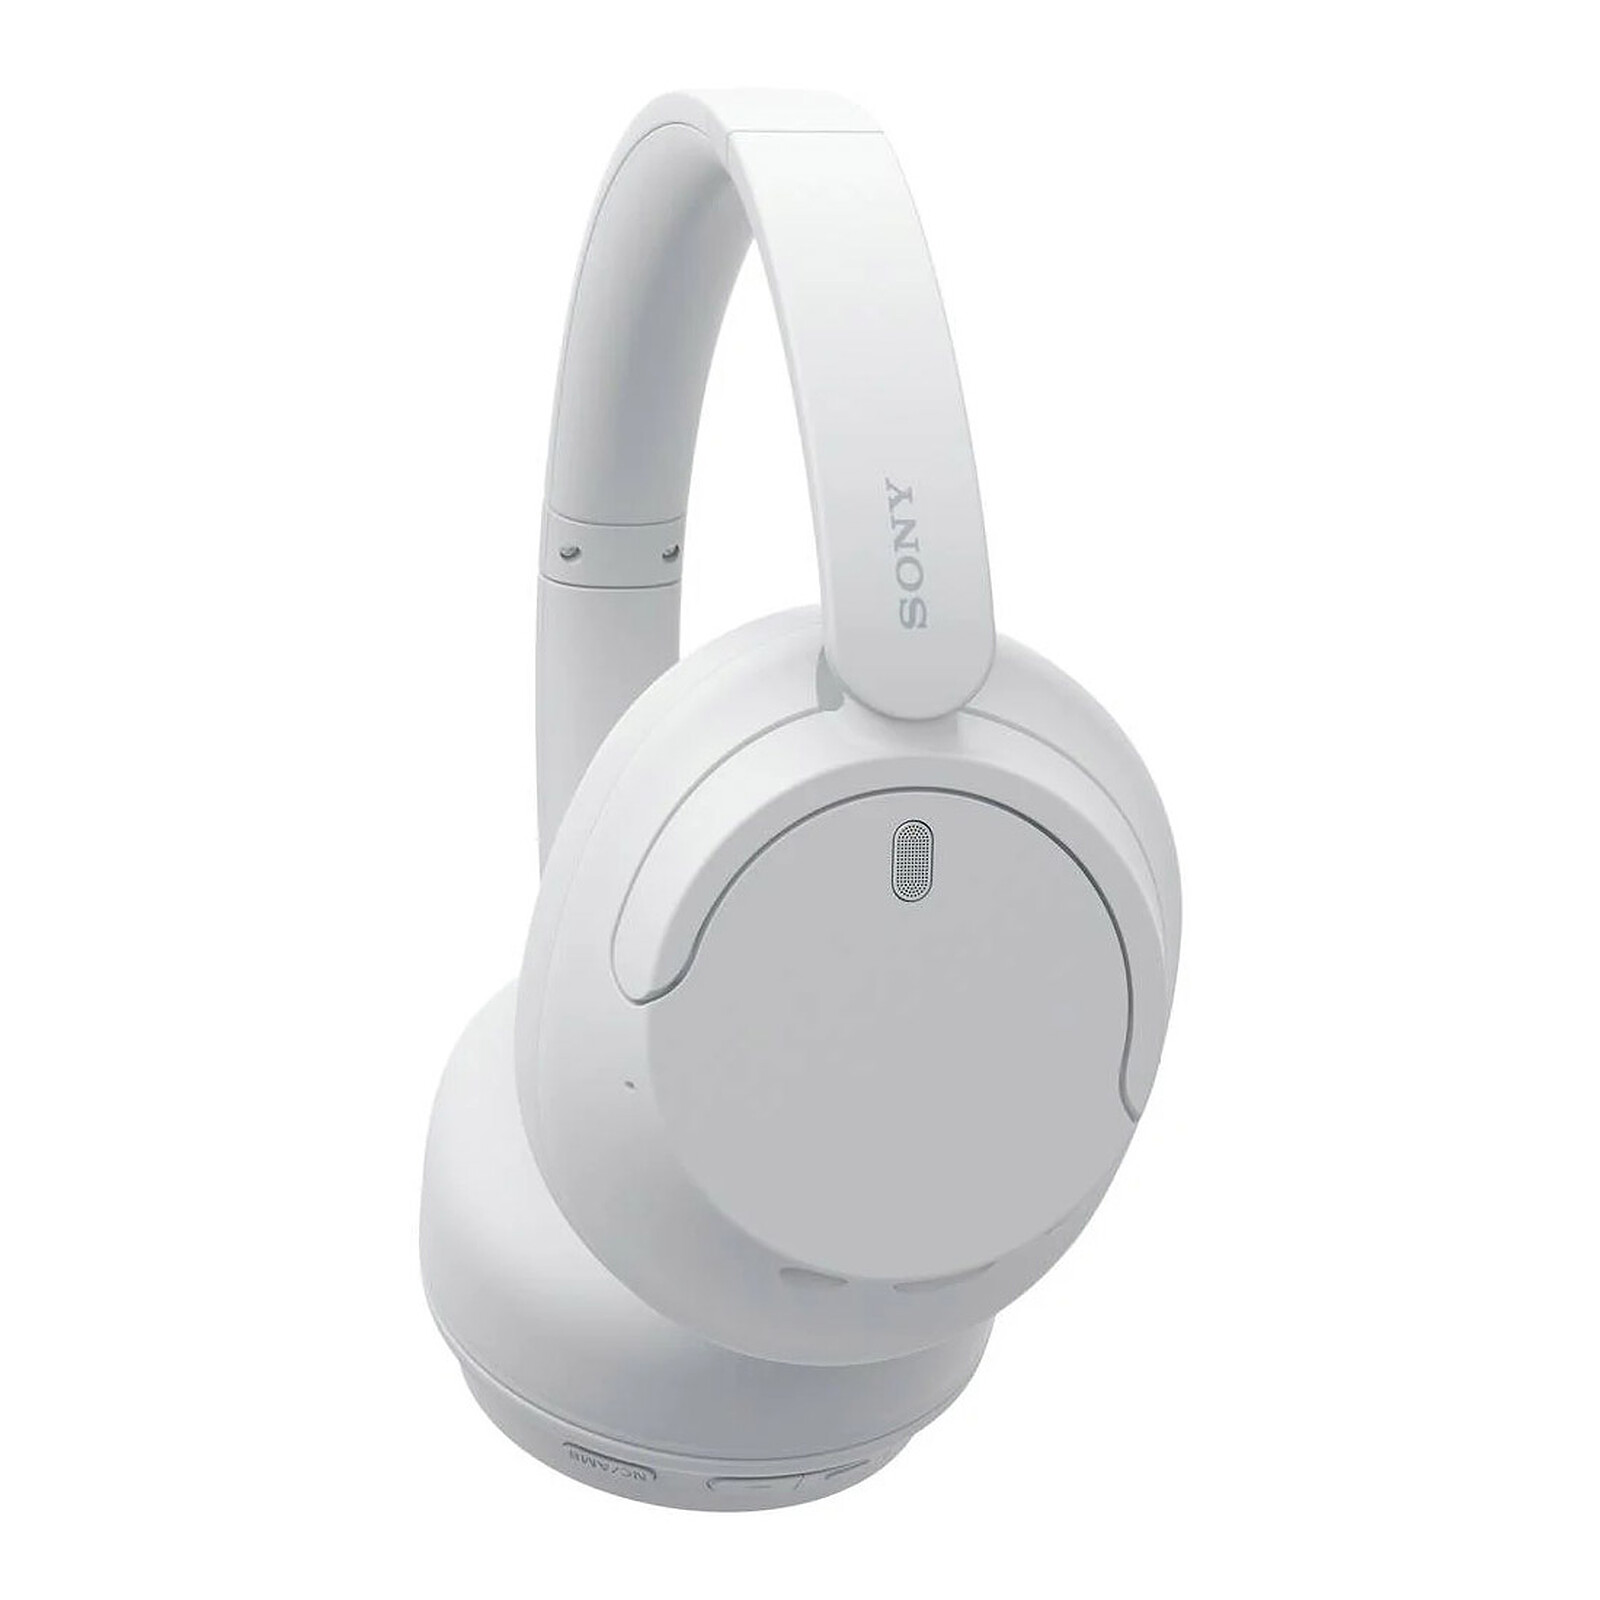 Sony WH-CH720N Auriculares Bluetooth con Cancelación de Ruido Blancos